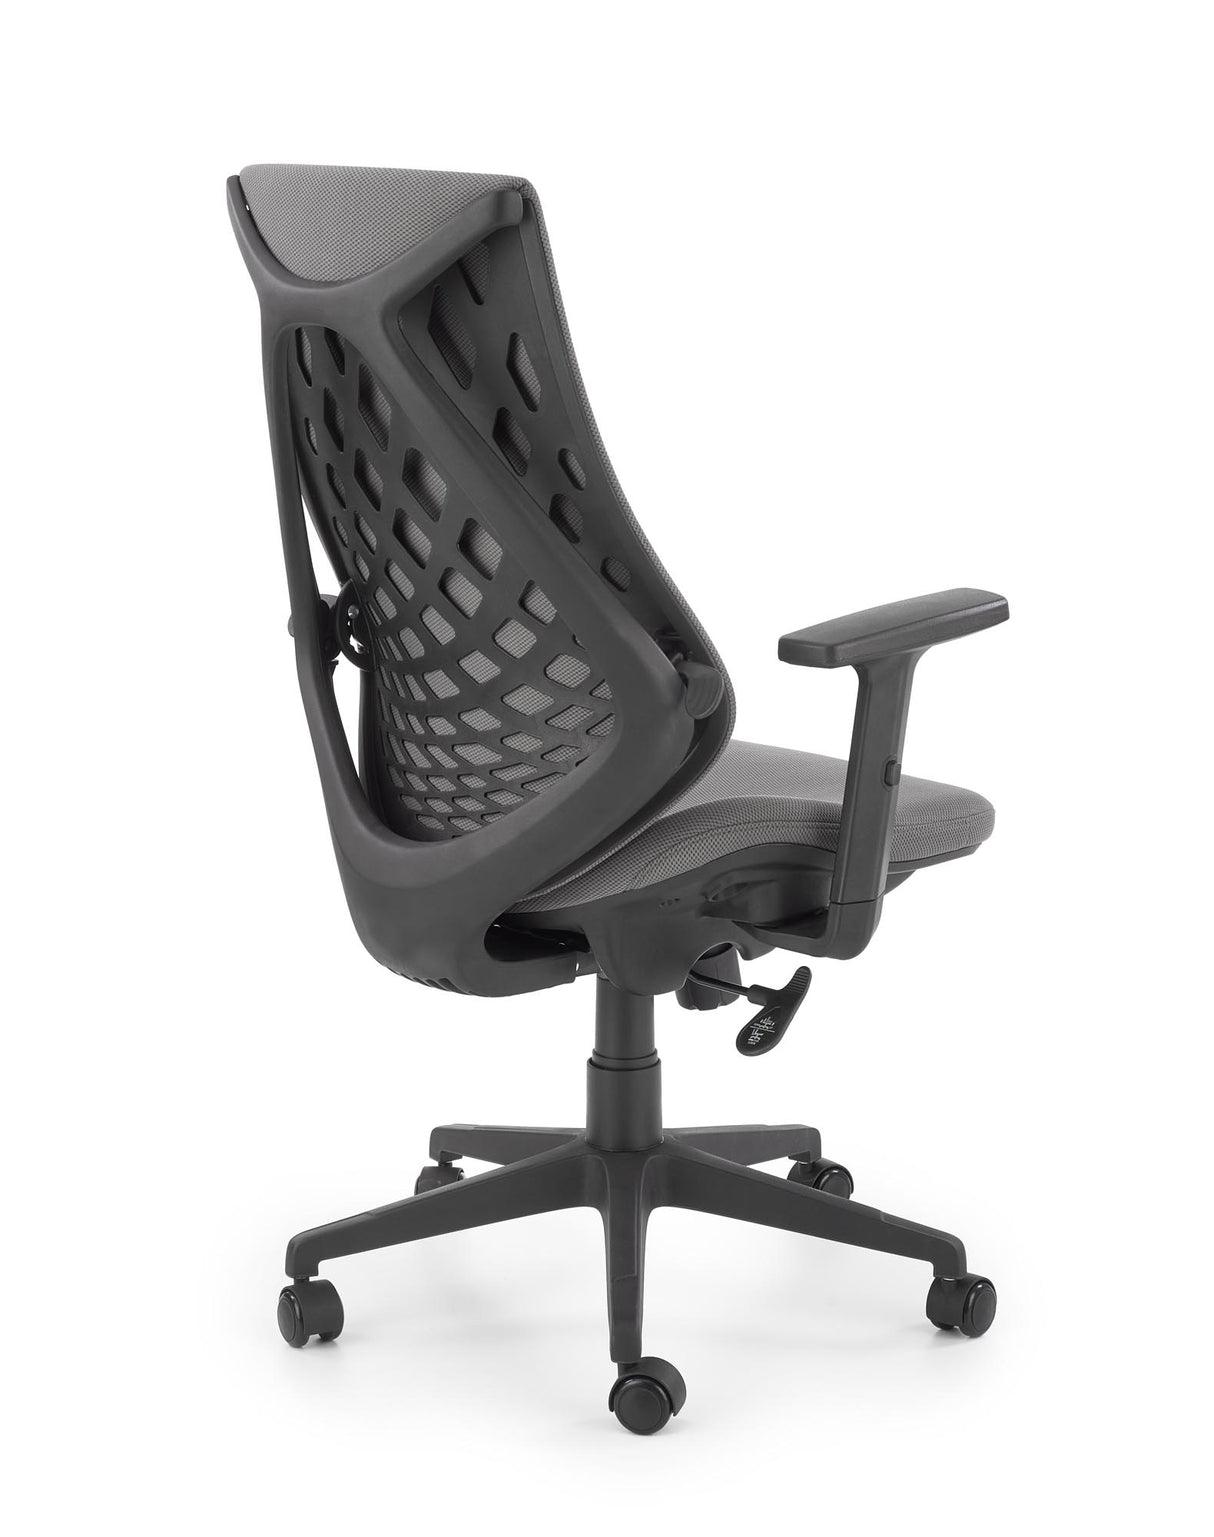 Office Chair HA2343